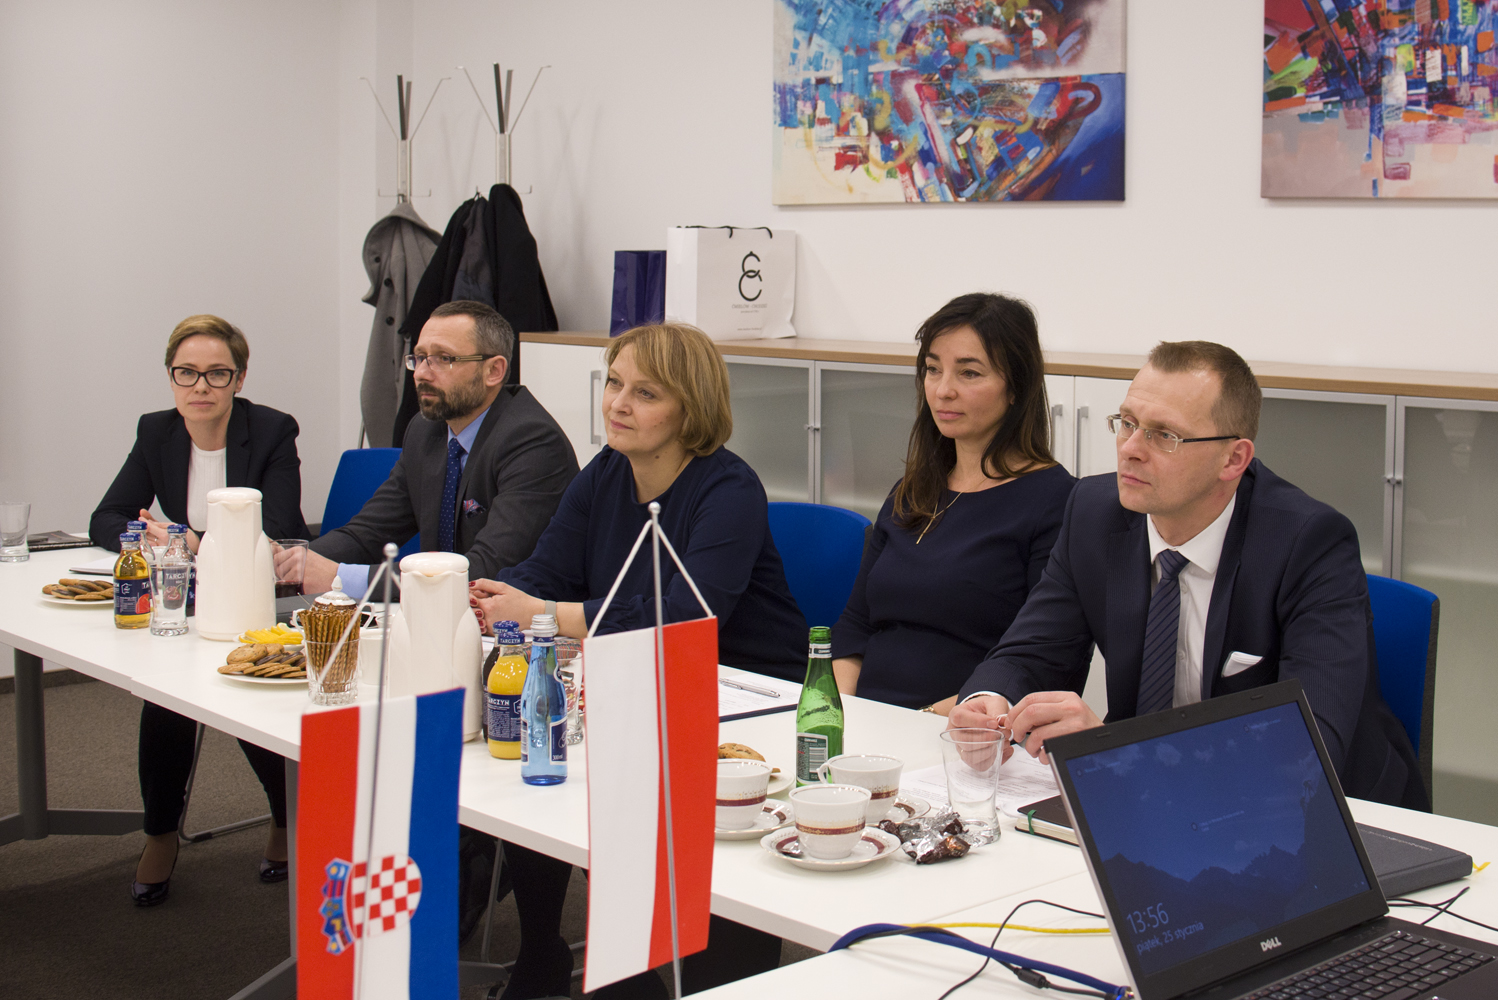 wizyta przedstawicieli chorwackiej Państwowej komisji nadzoru zamówień publicznych